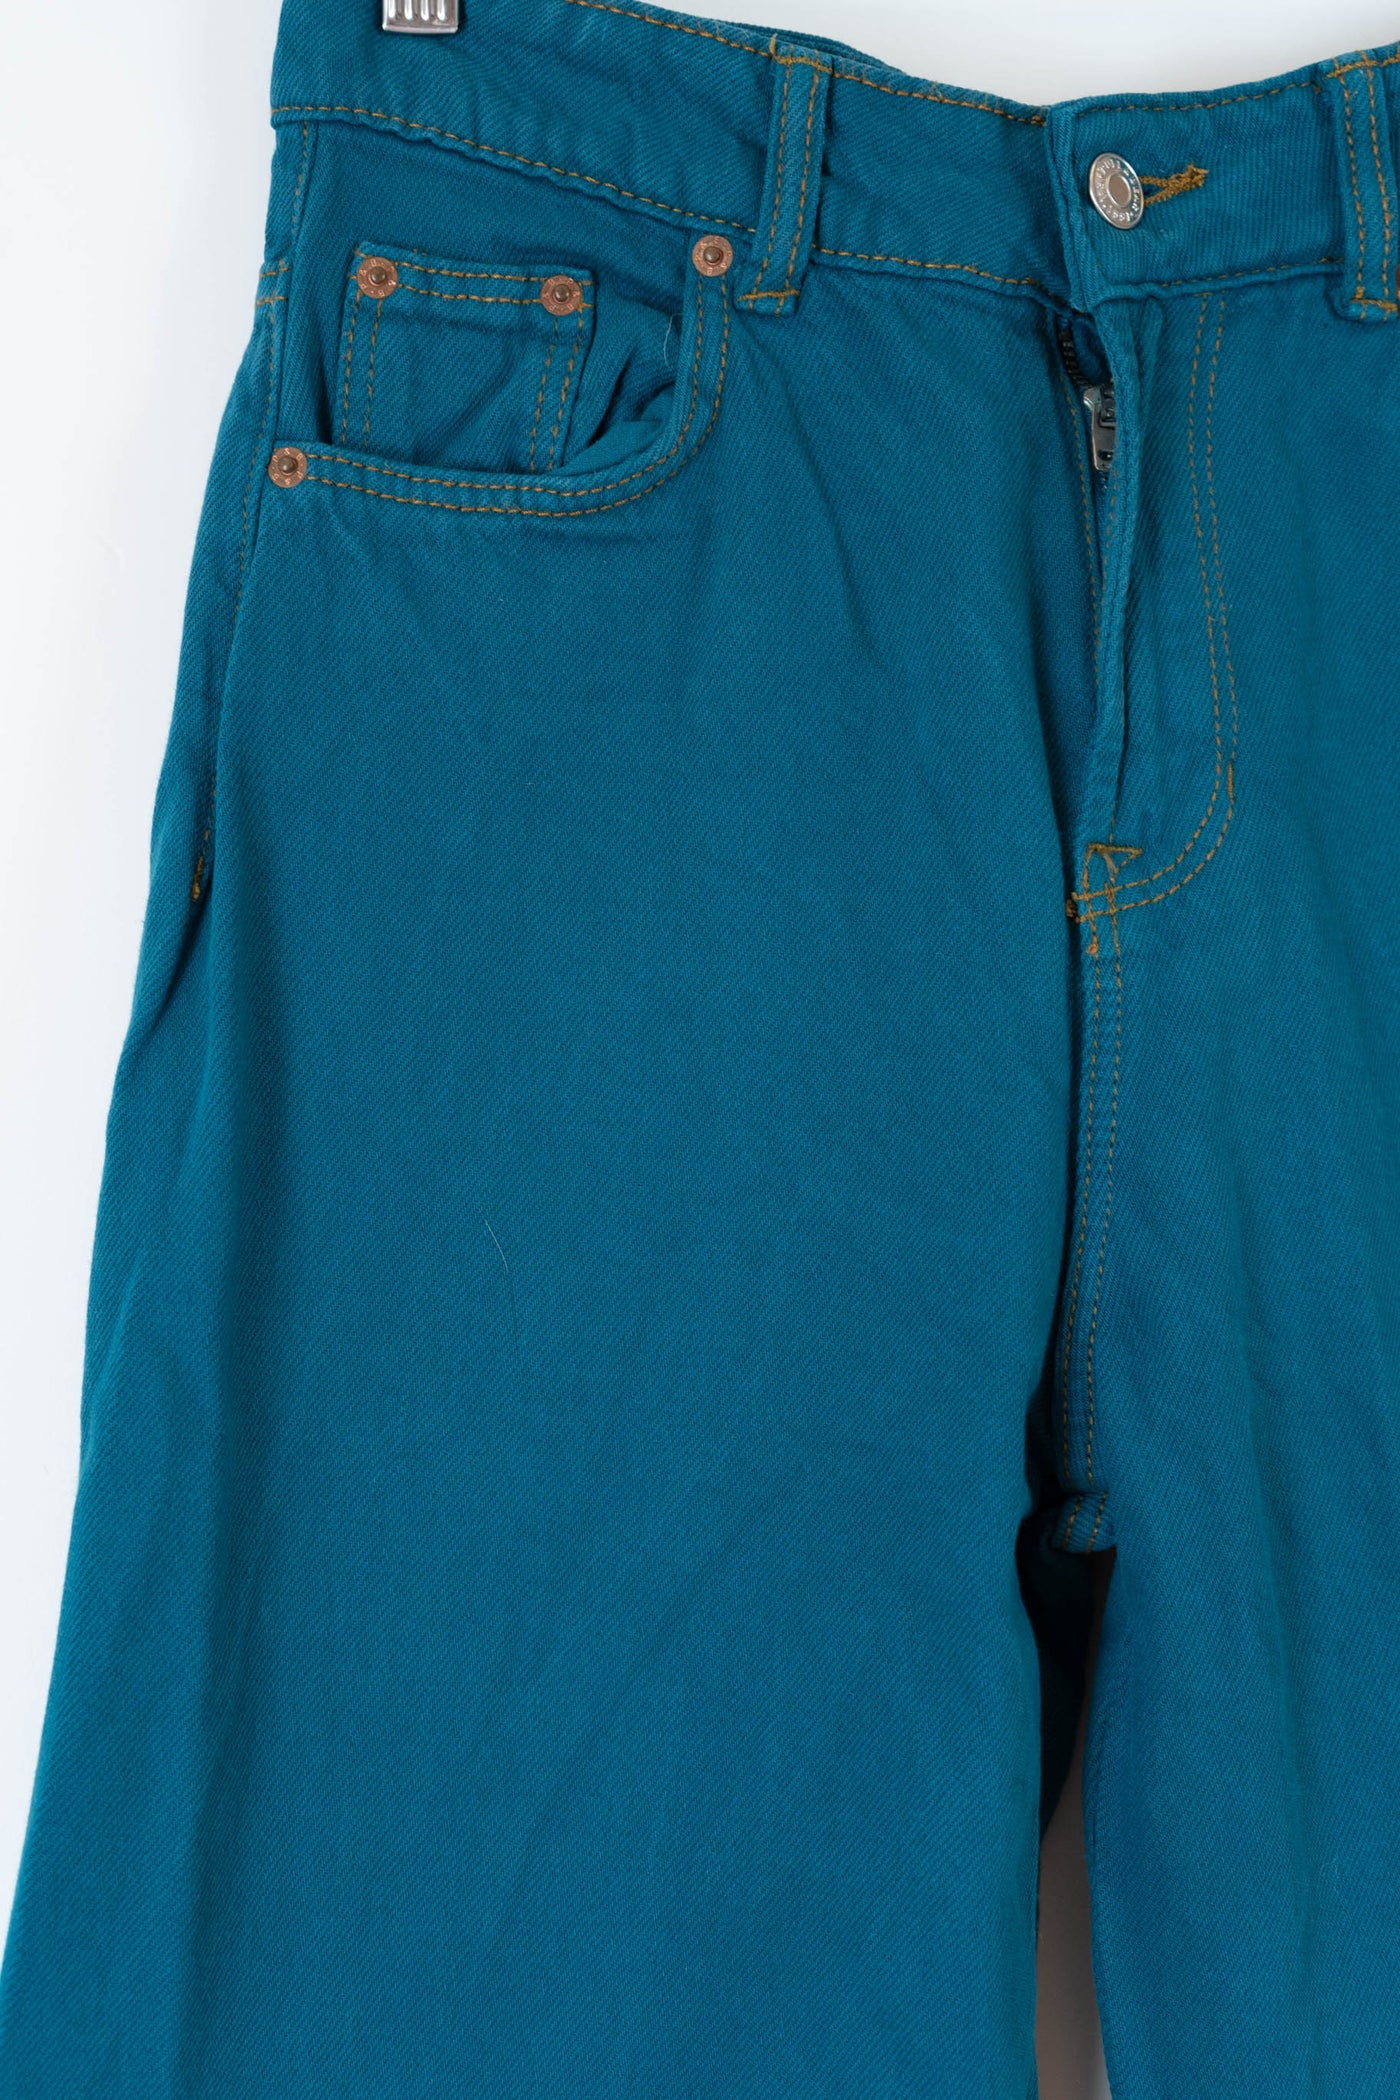 Pantalón ancho azulado